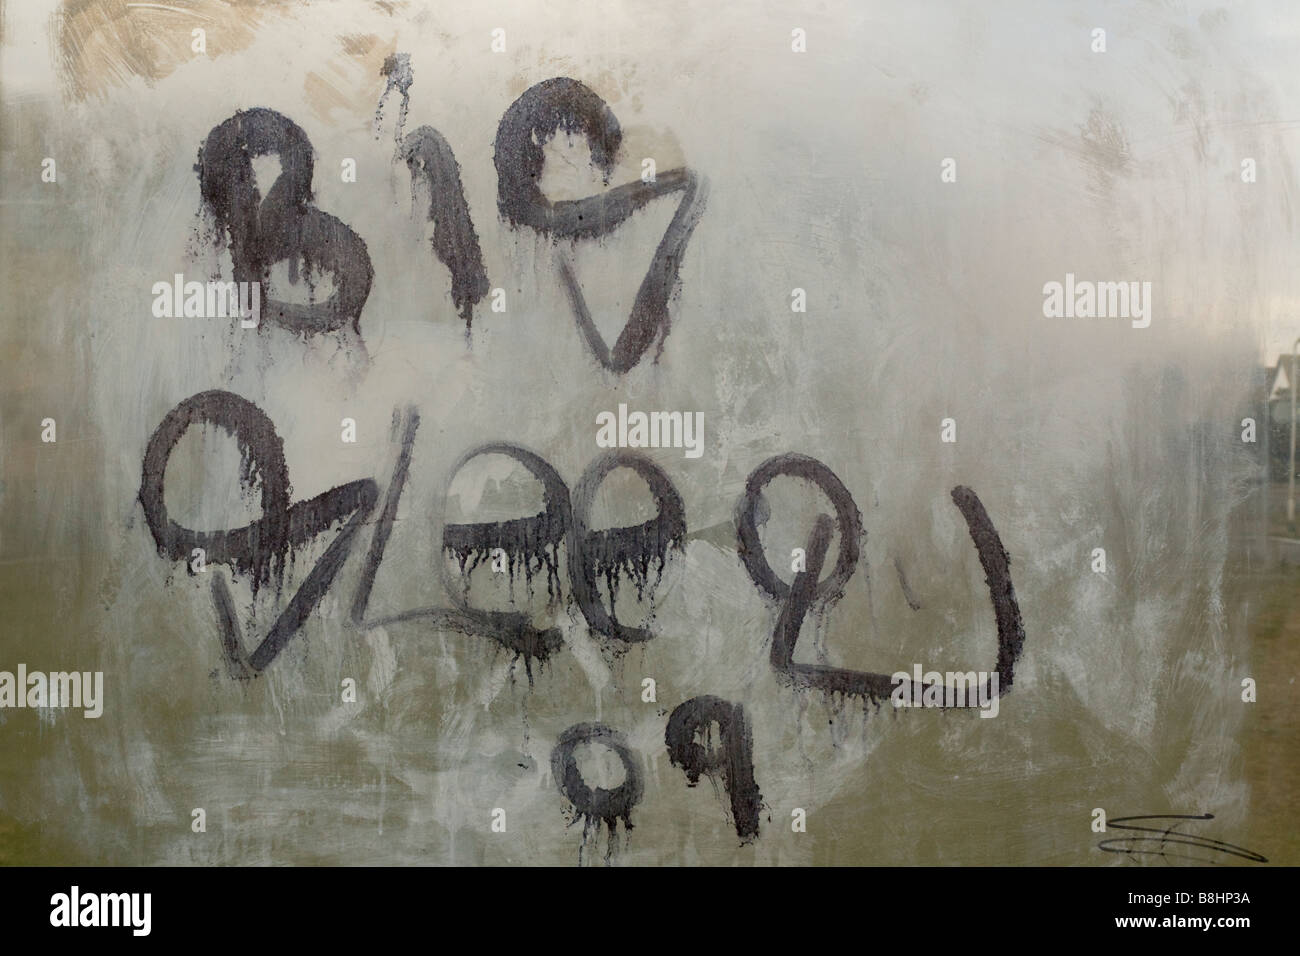 Graffiti Stift 'Tag' auf ein Bus-Tierheim-Fenster Stockfotografie - Alamy